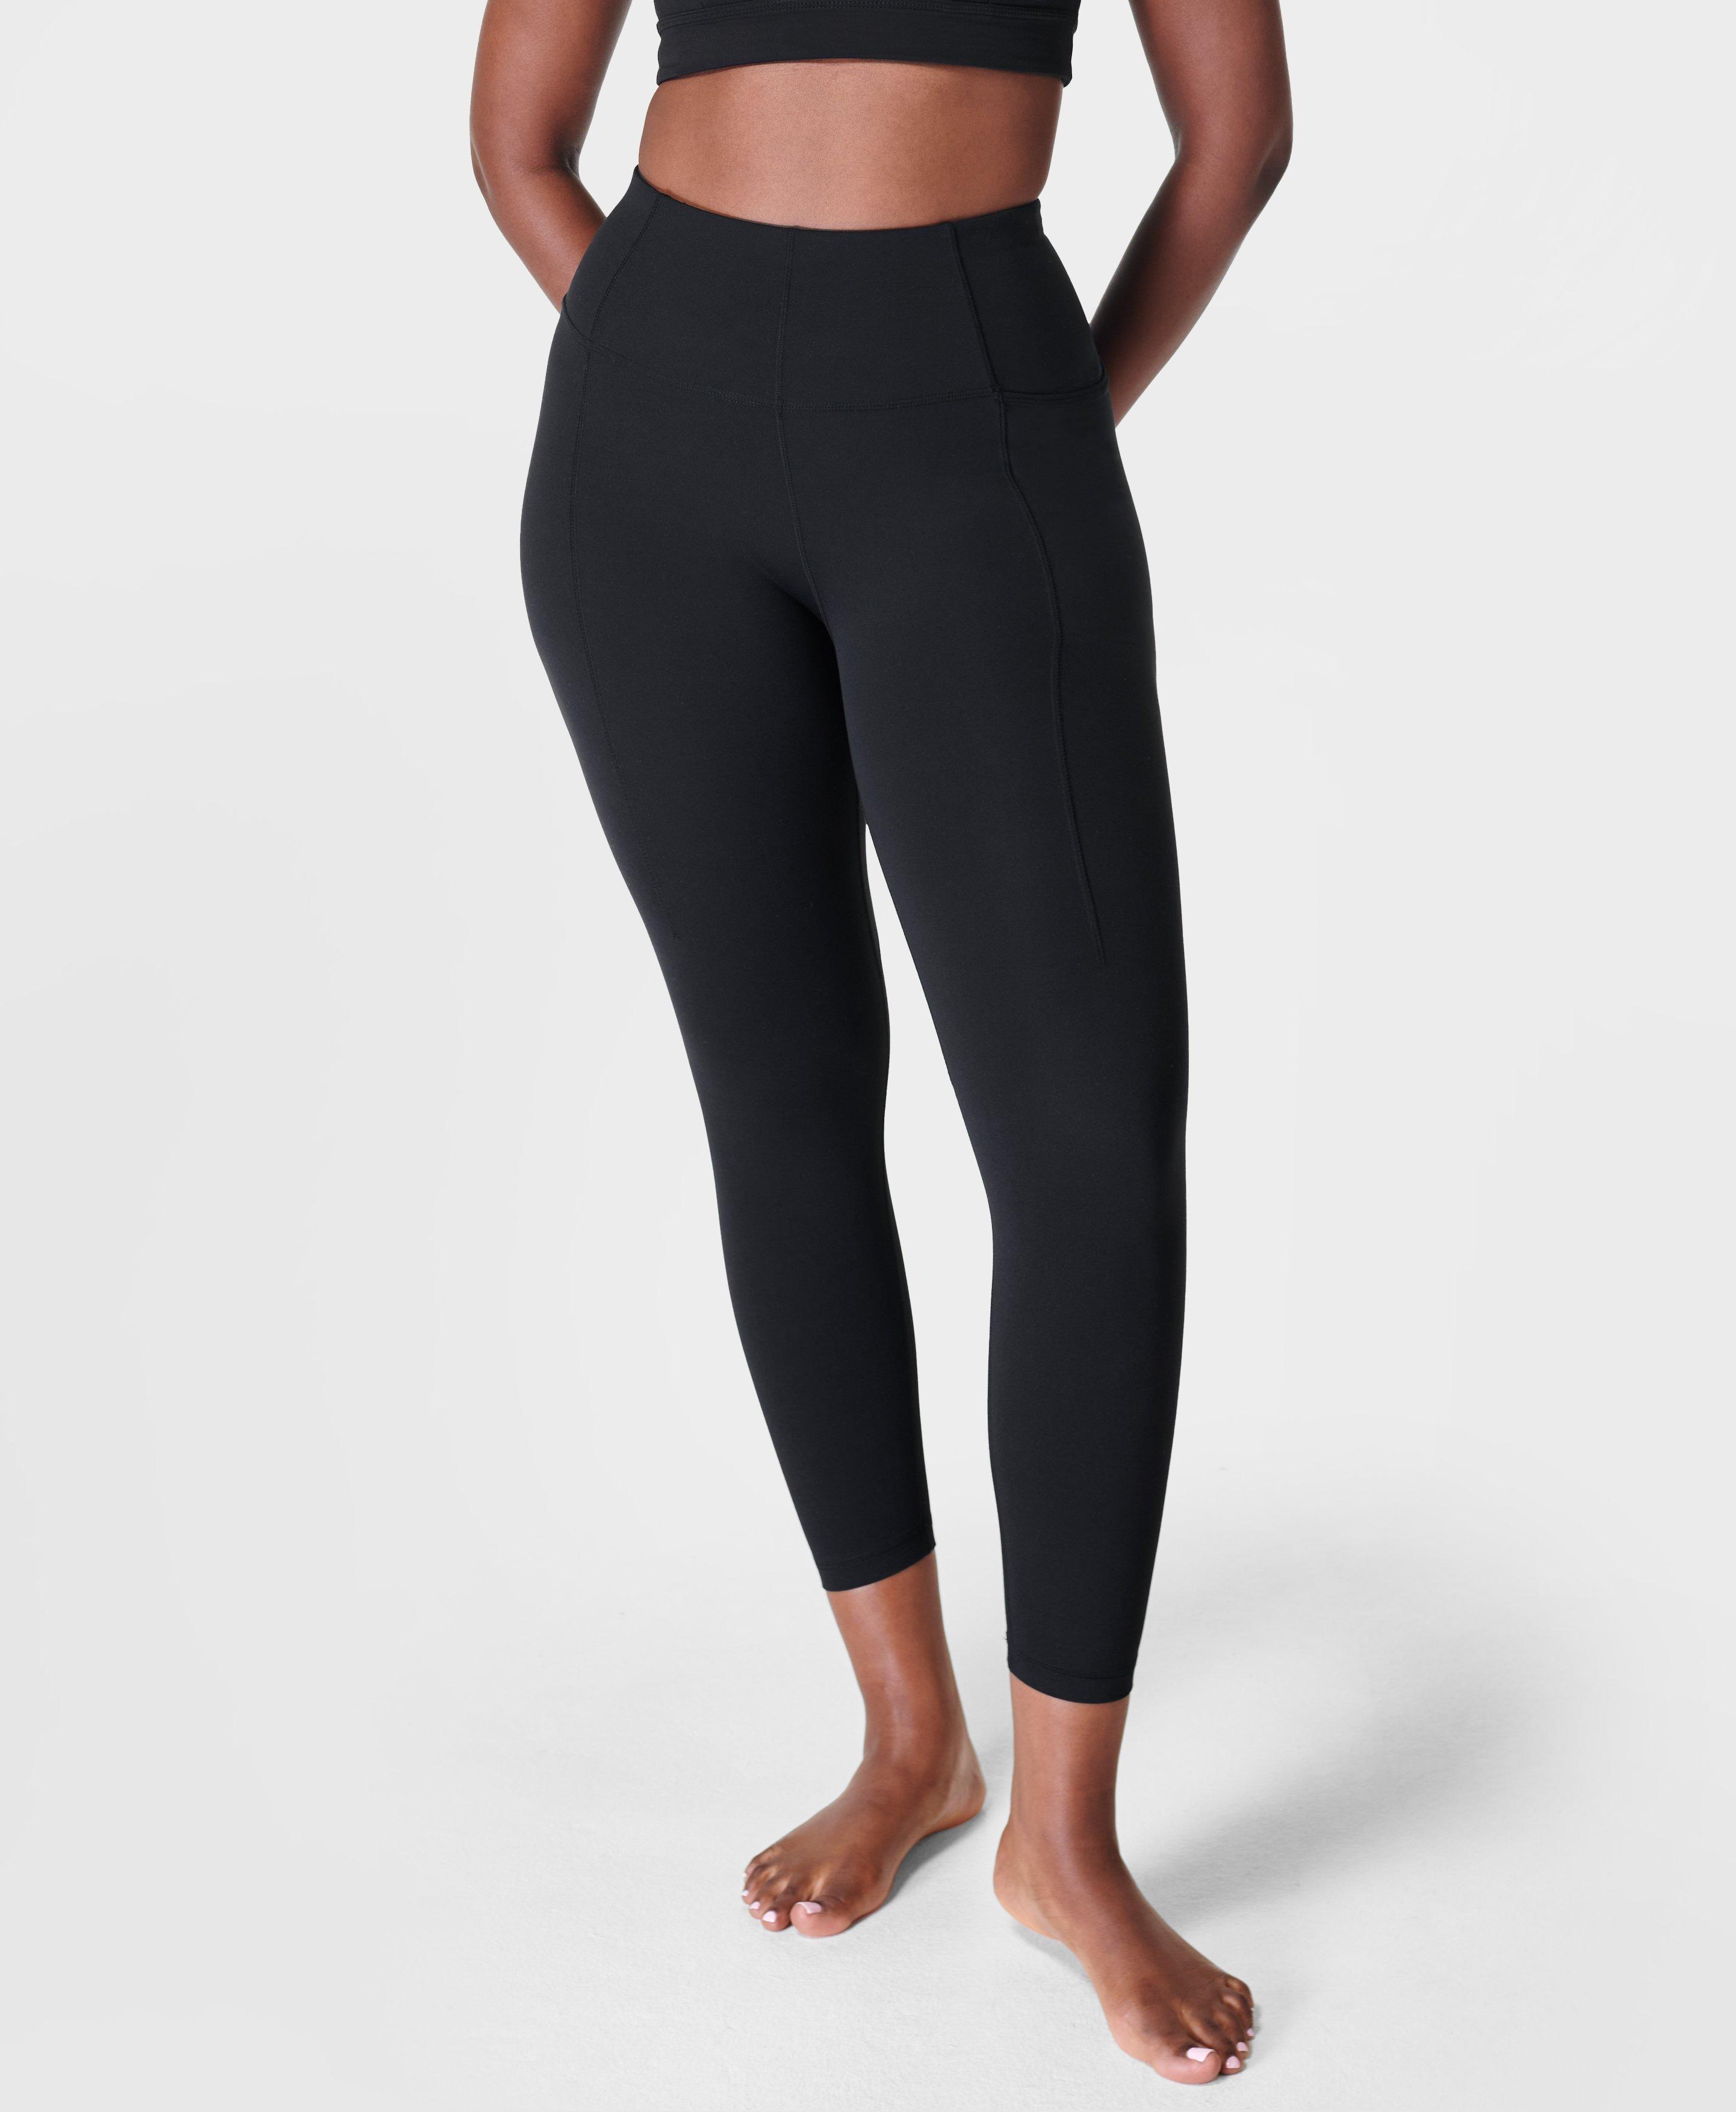 Lululemon Align Leggings Black Size 8 Women Yoga Pants